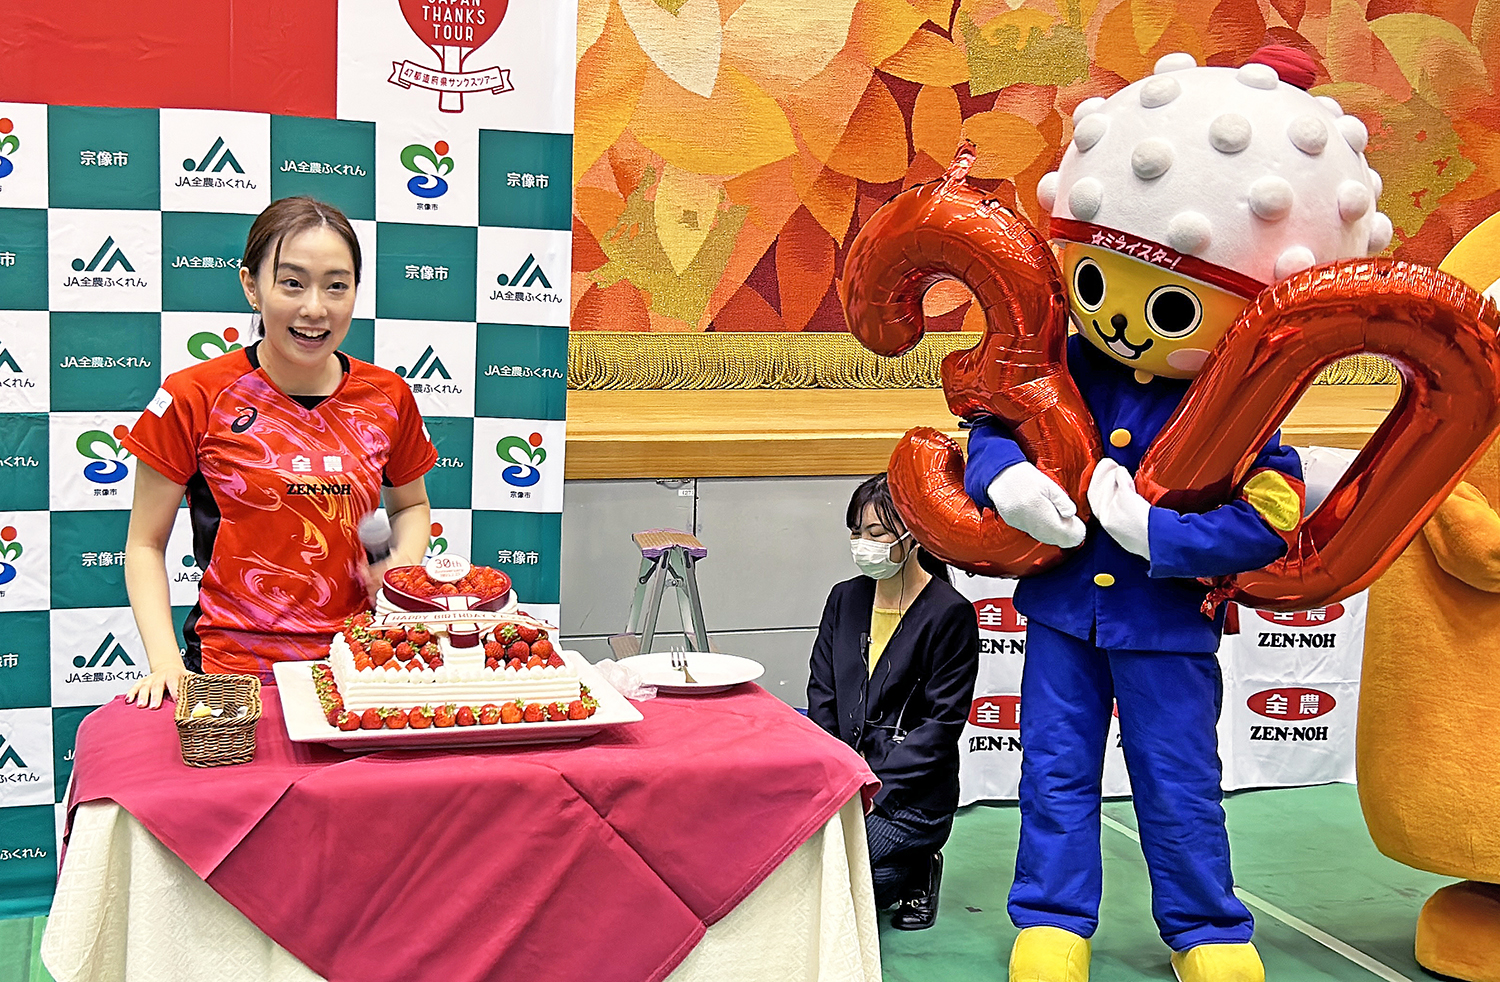 突然のバースデーケーキの登場に驚く石川選手